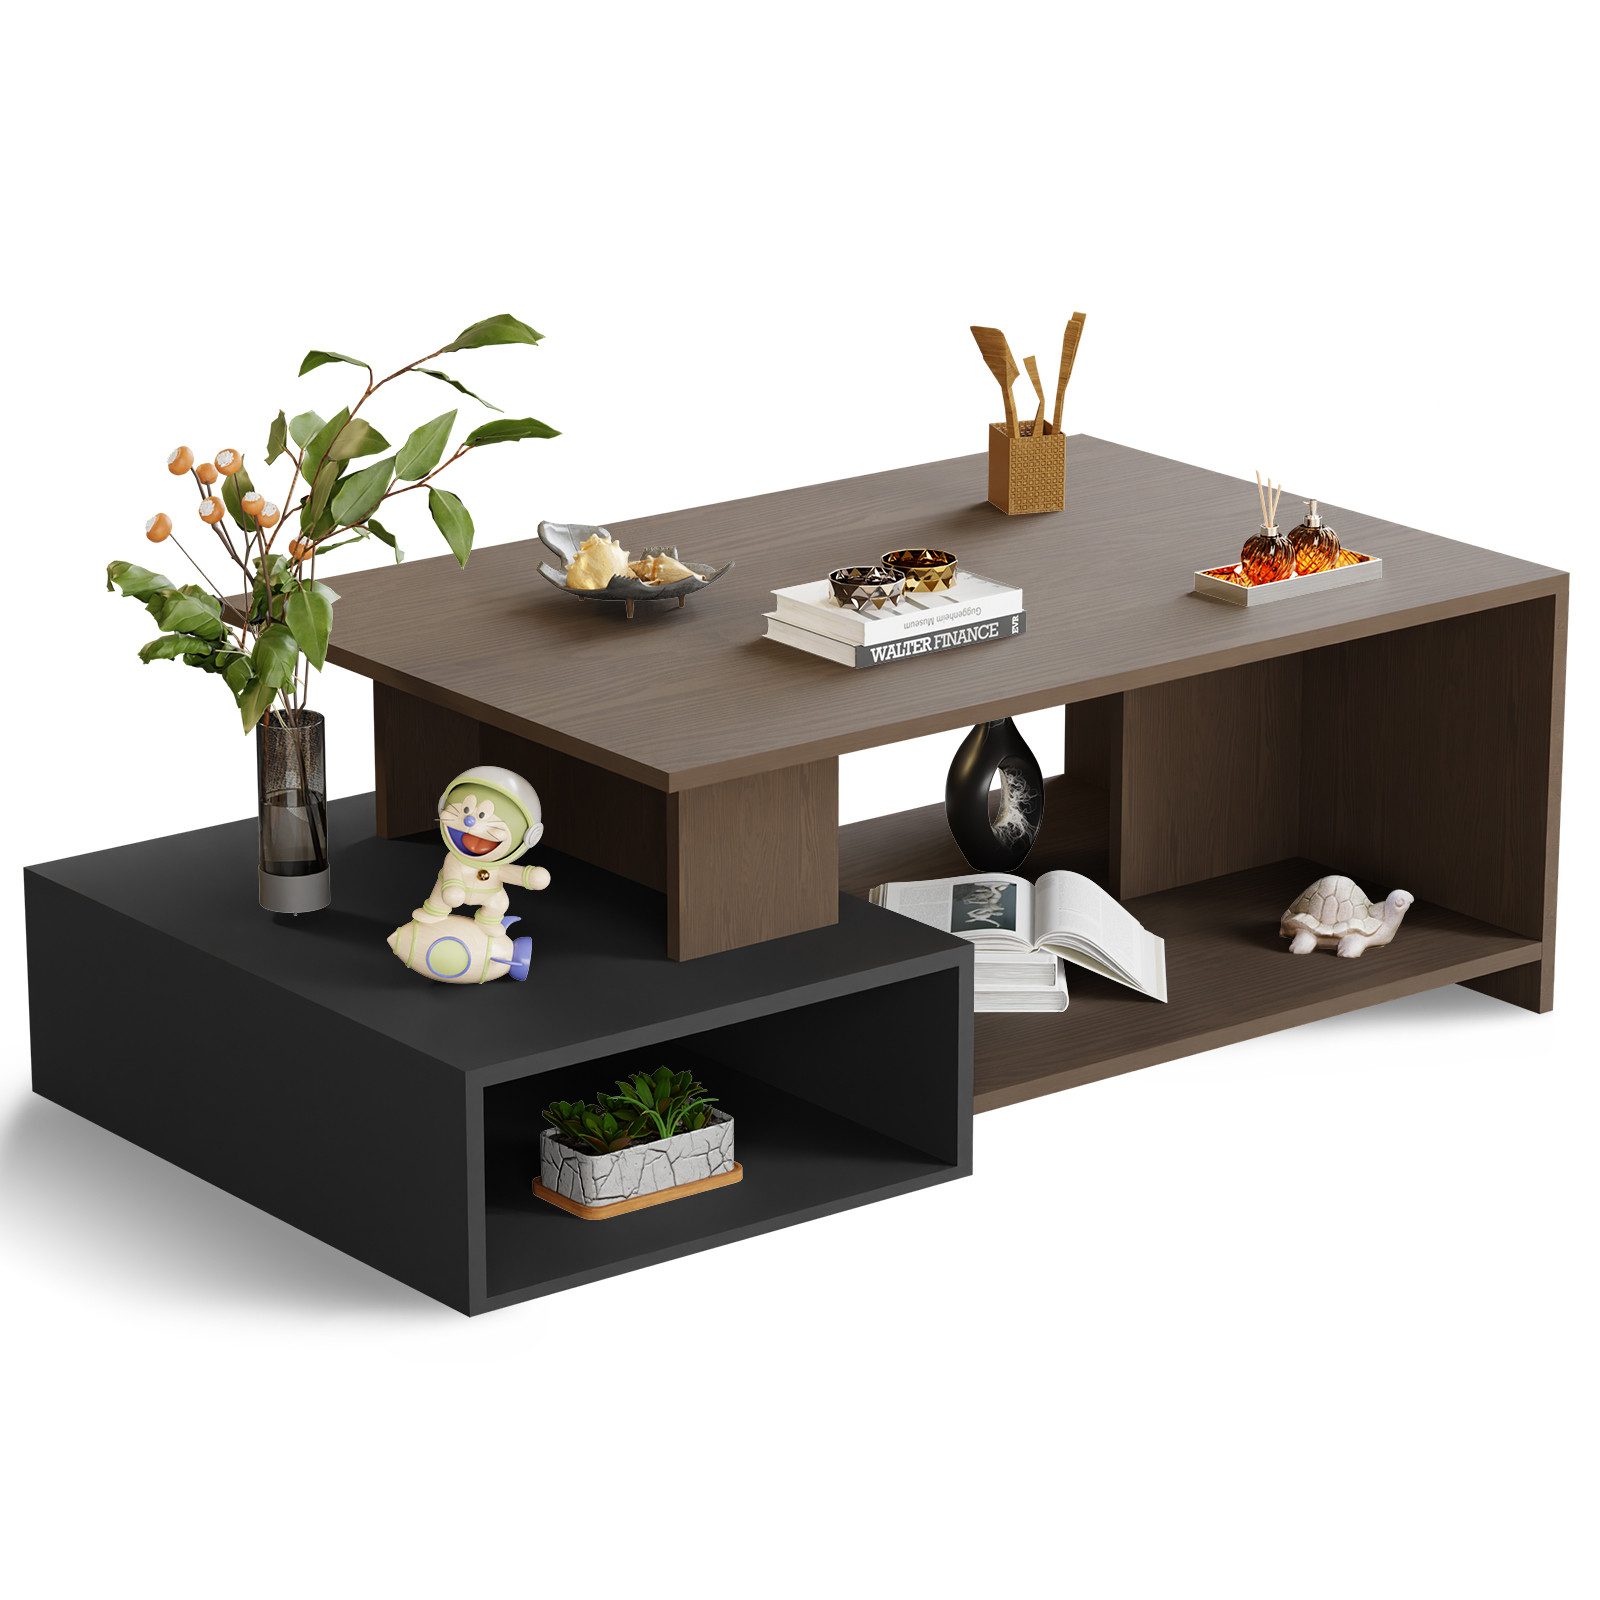 ROYGBIV Couchtisch Wohnzimmertisch, Coffee Table mit offener Stauraum, Sofatisch holz, Wohnzimmer tisch für couch, Couchtisch industrial style 108*60*36cm